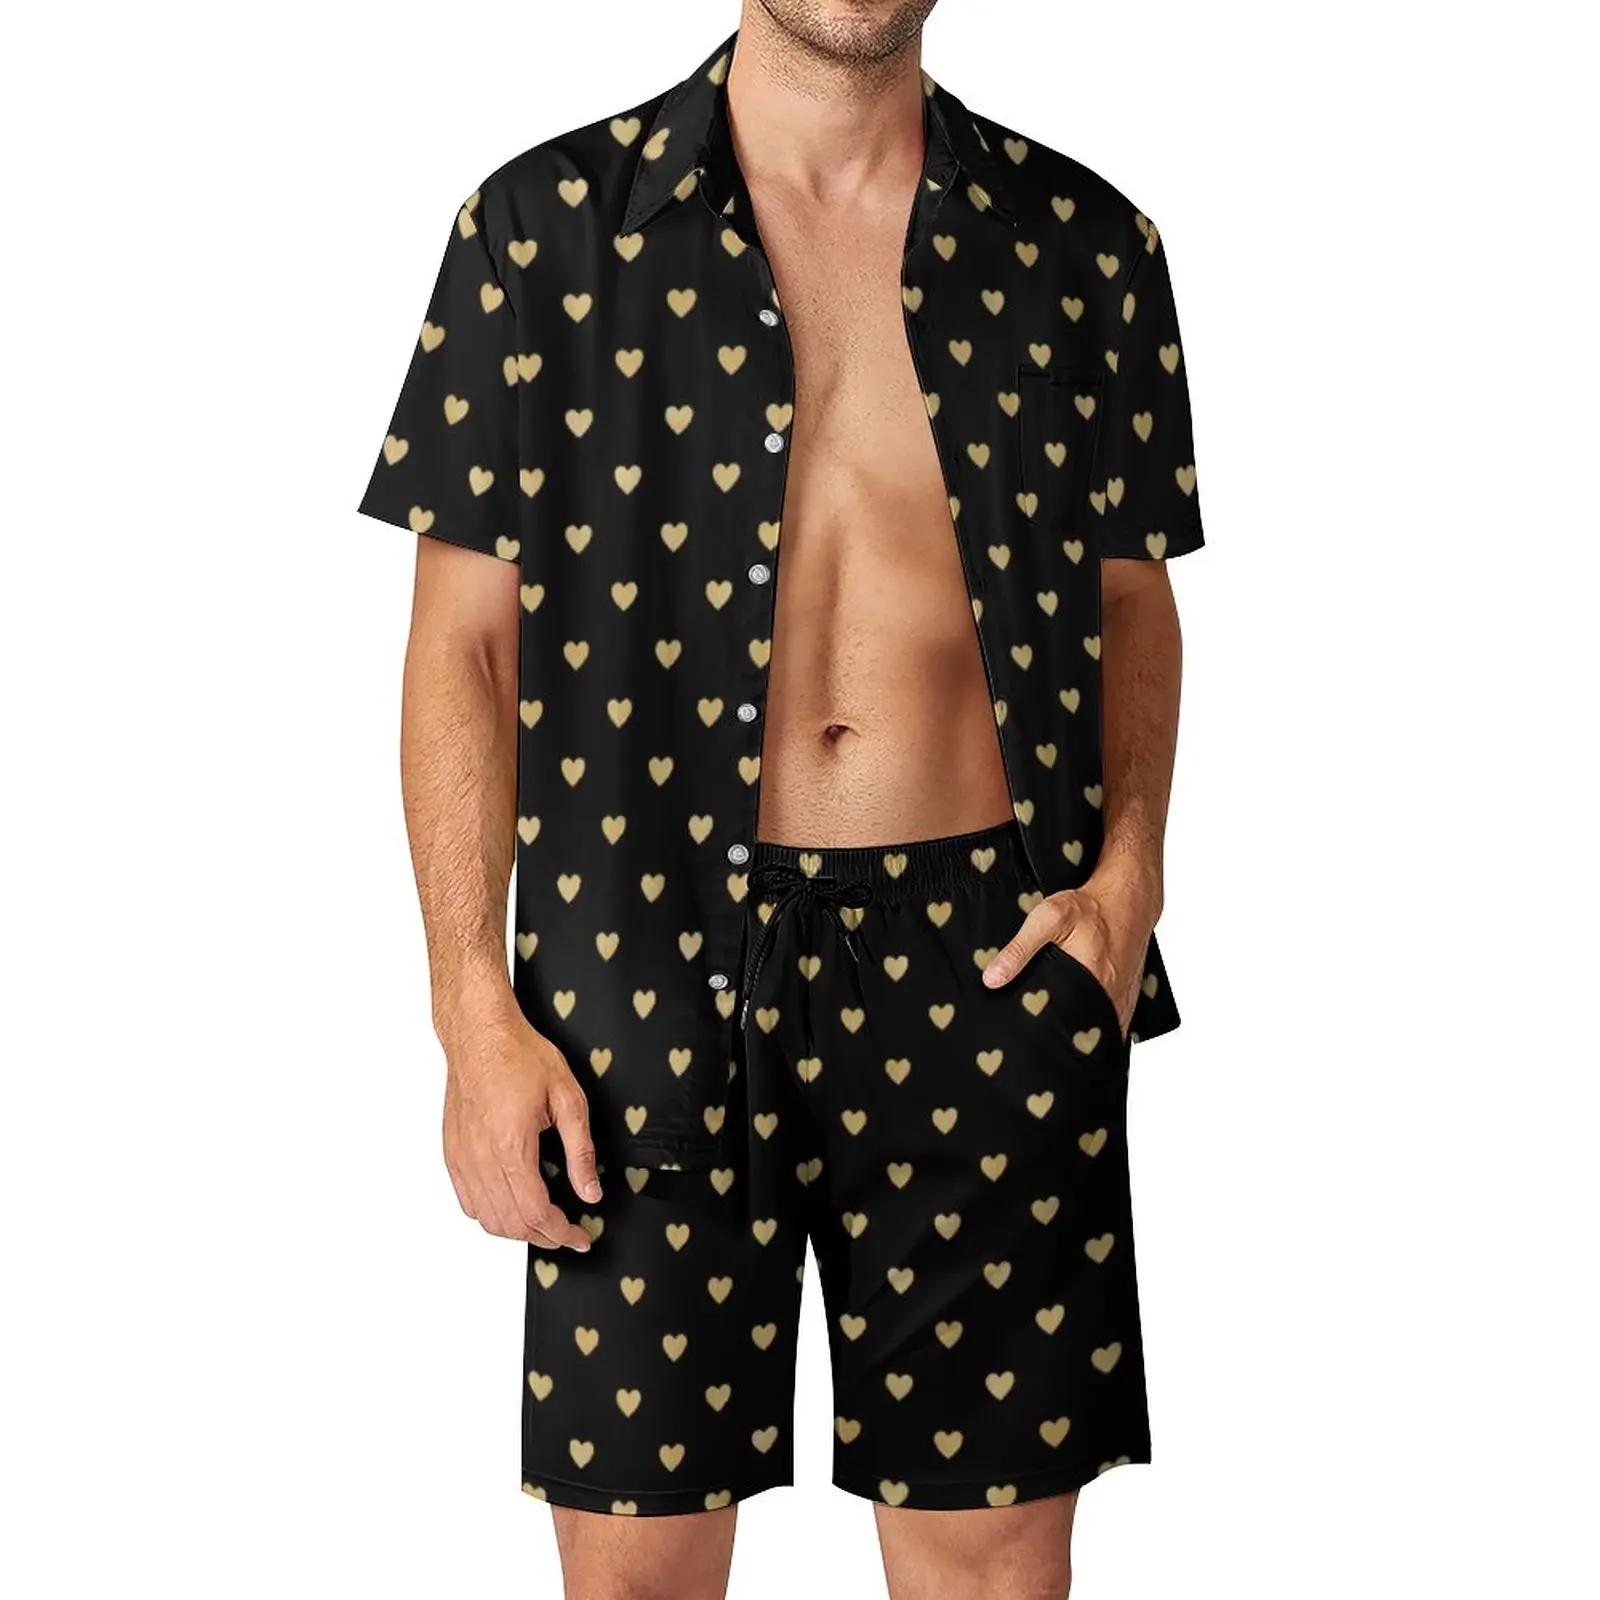 

Пляжные мужские комплекты с принтом сердца, повседневный комплект рубашки с рассыпчатыми золотыми сердечками, летние шорты с узором, модный костюм из двух предметов